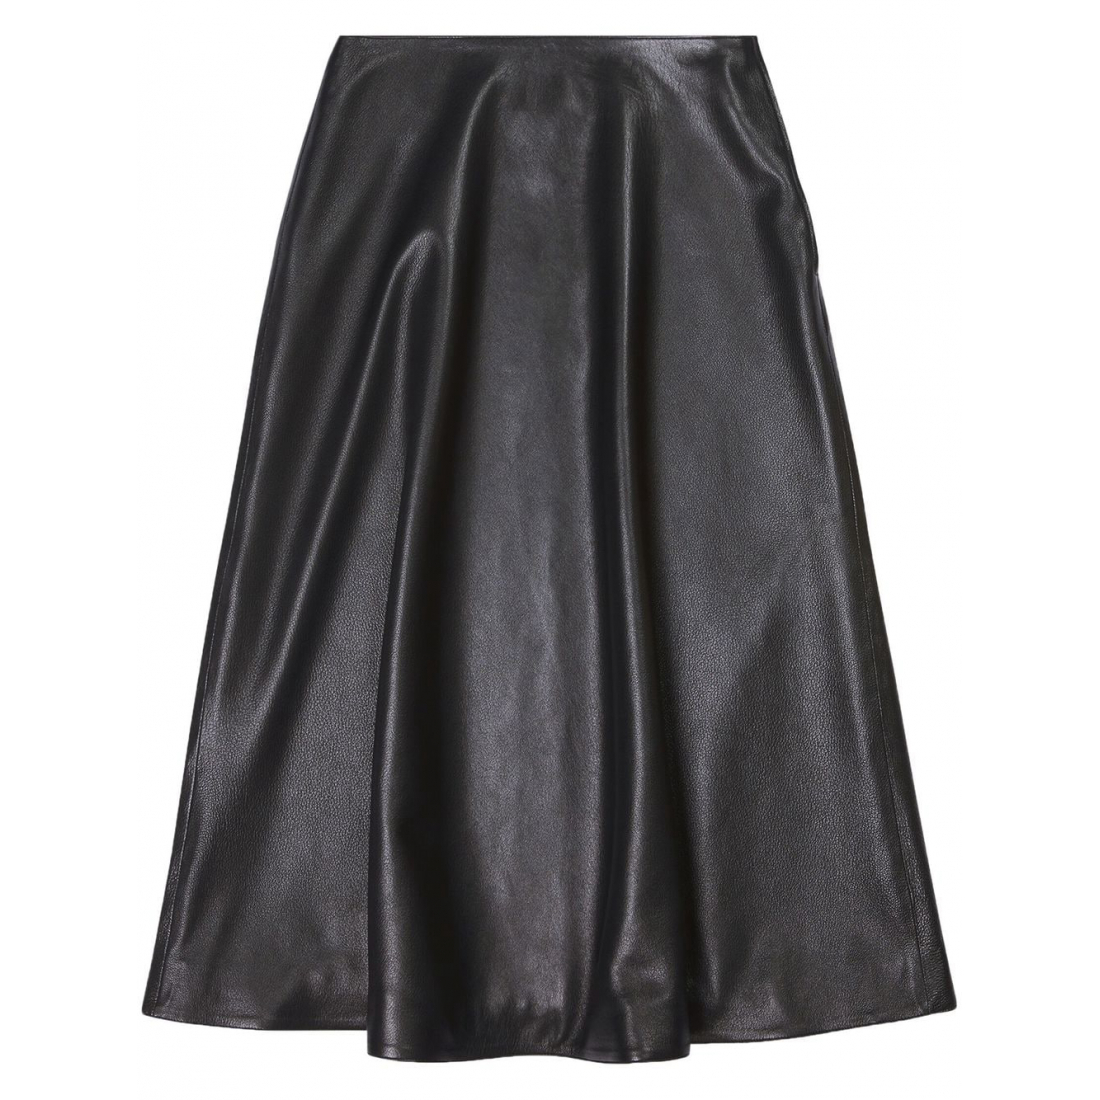 Women's Midi Skirt